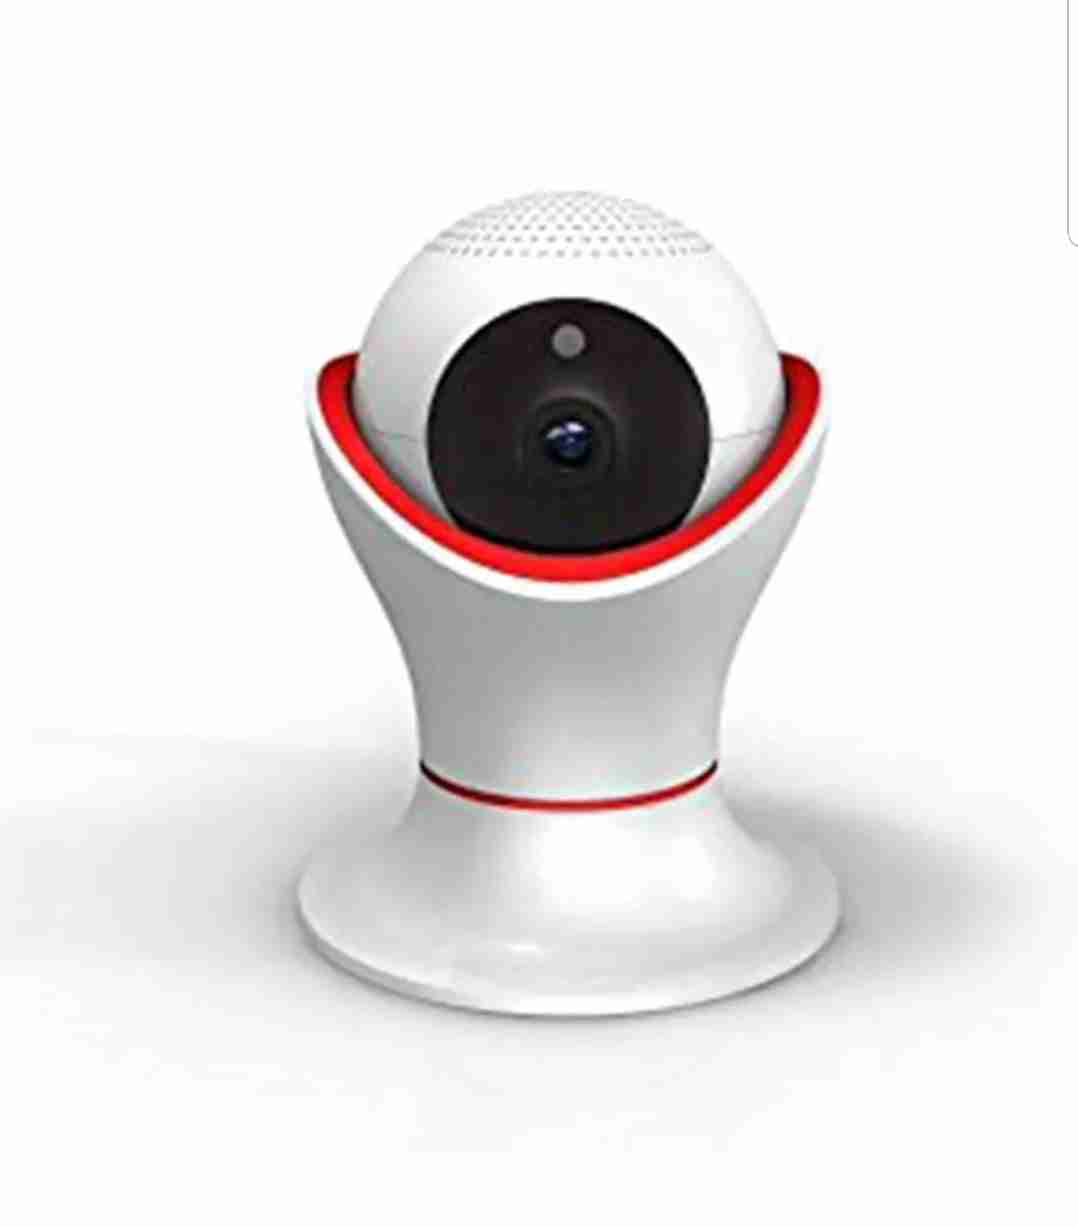 كاميرا مراقبة واي فاي لا سلكية نوع hikvision لا تنسَ أنك شاهدت هذا الإعلان في عنكبوت كاميرا م-  360 WIFI SECURITY CAMERA...